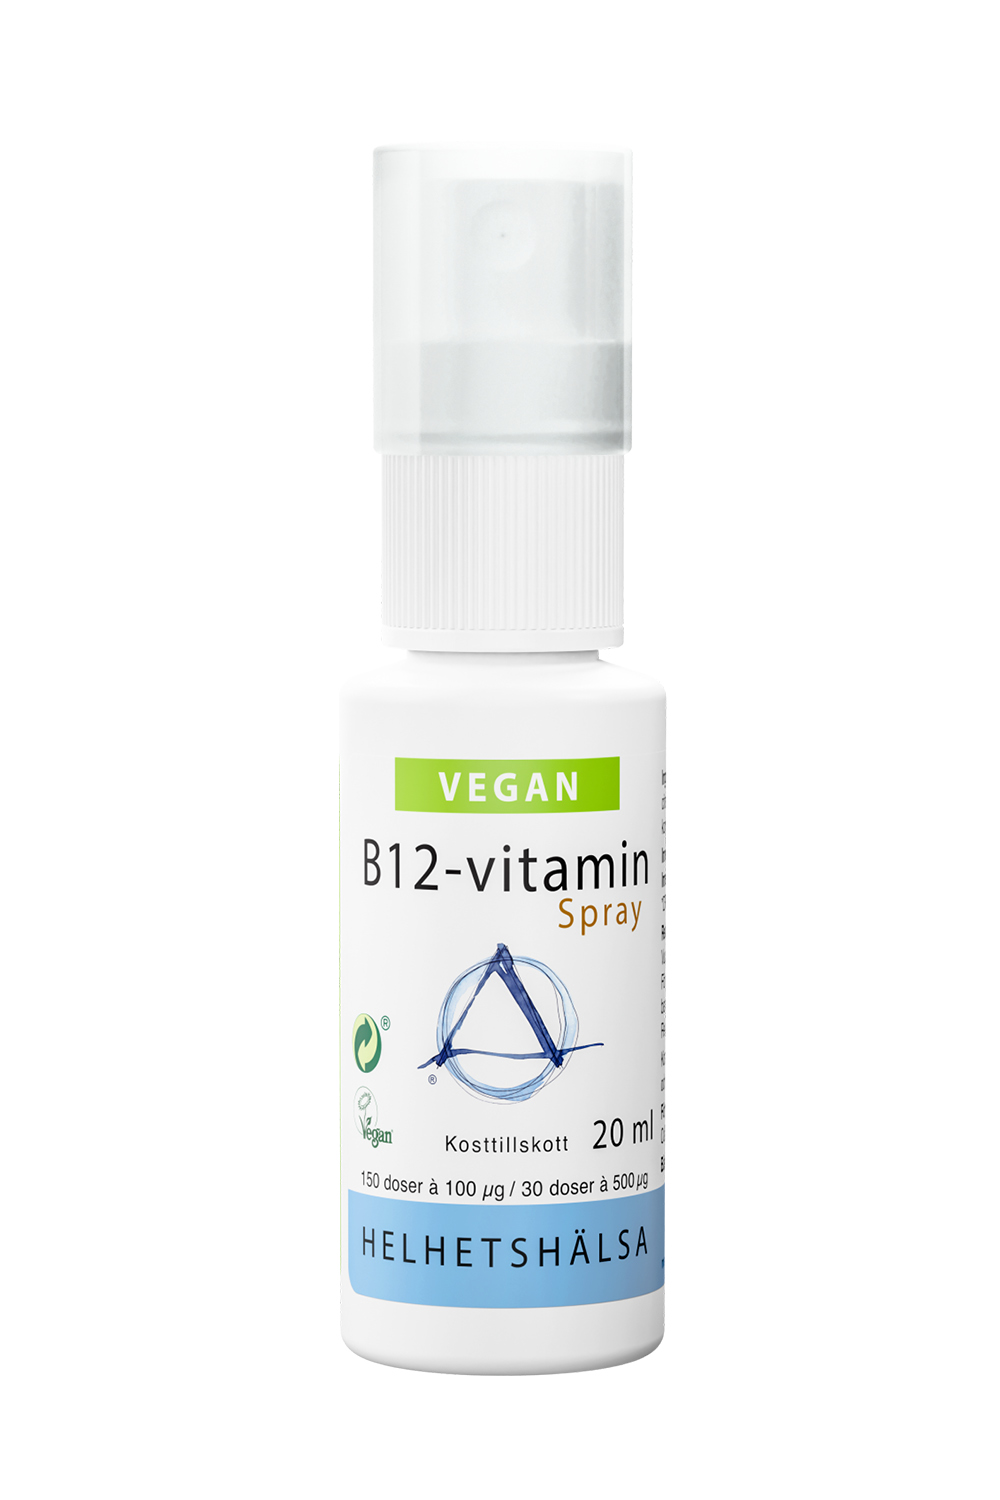 Helhetshälsa B12-vitamin 100 μg Spray 20 ml